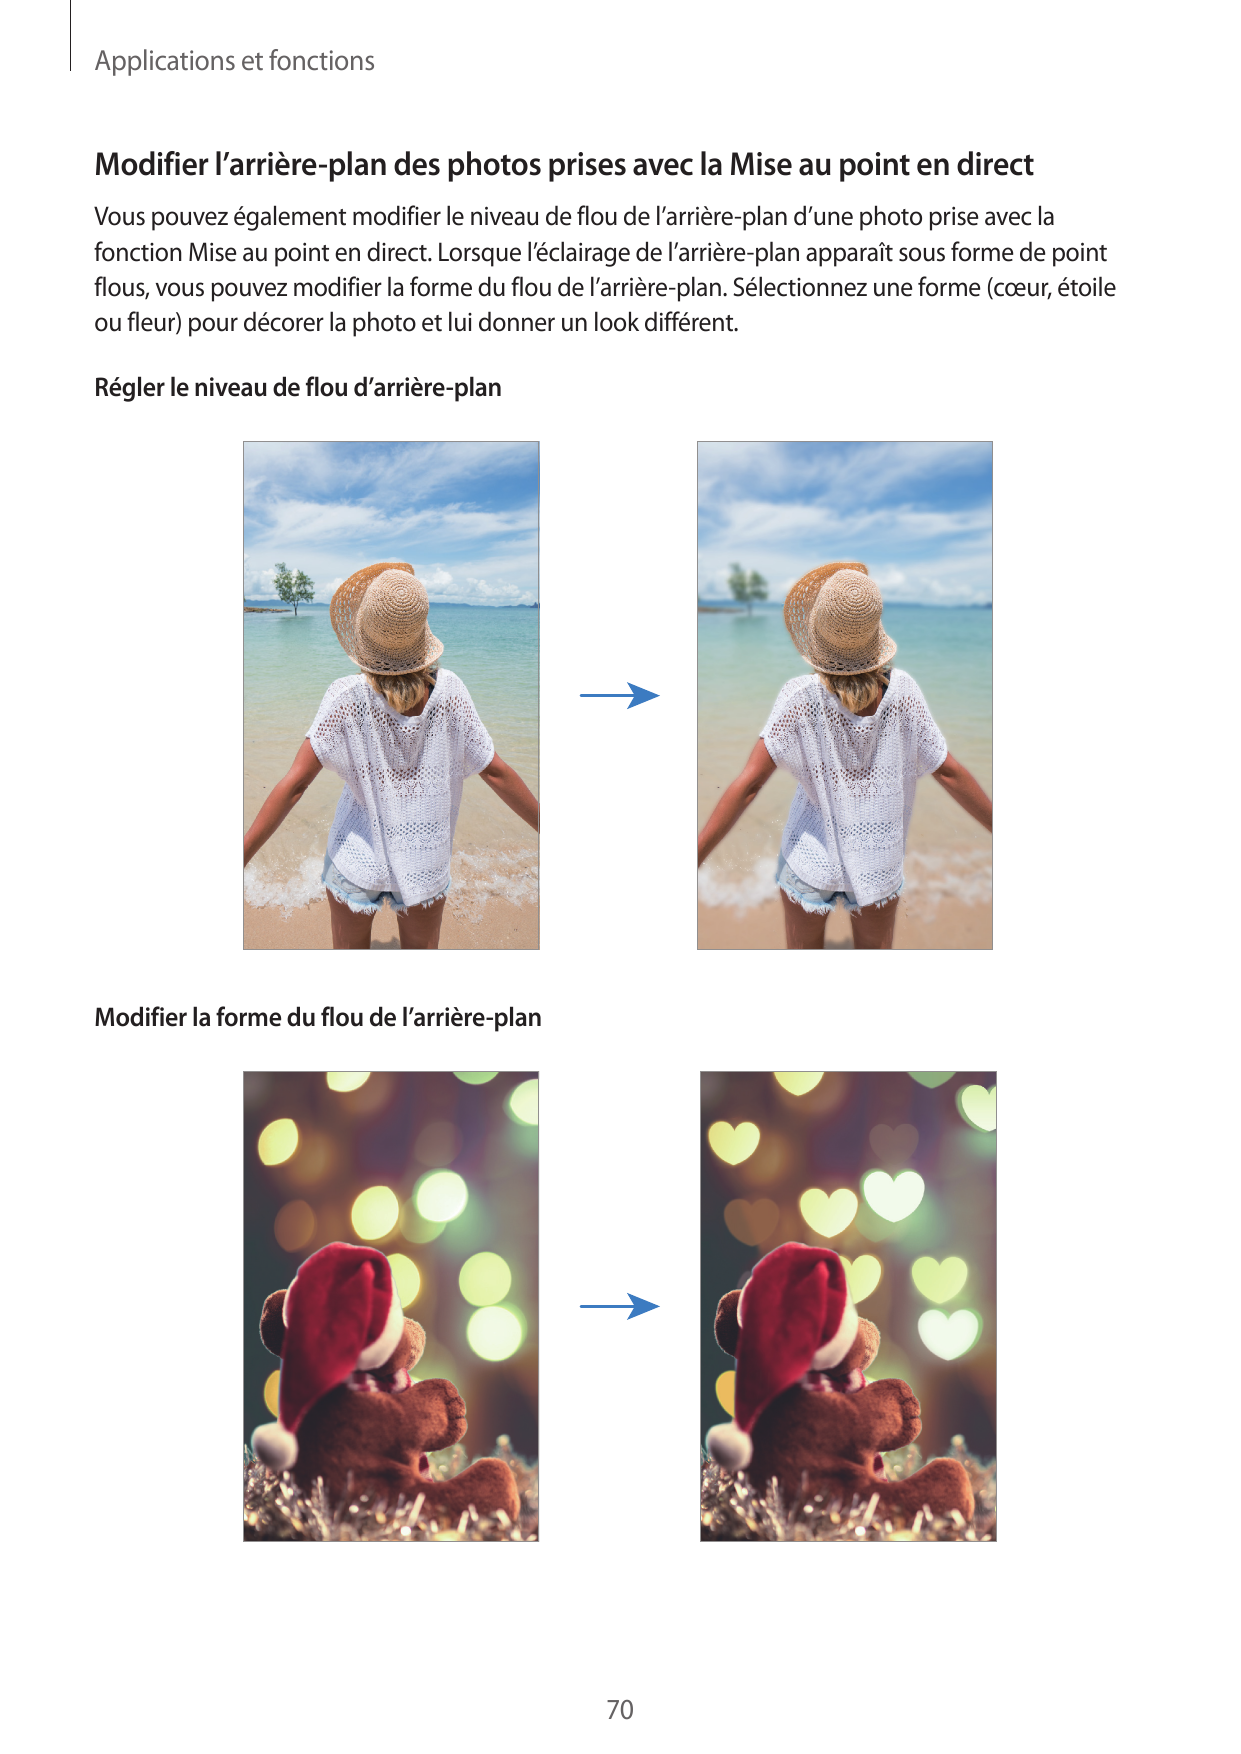 Applications et fonctionsModifier l’arrière-plan des photos prises avec la Mise au point en directVous pouvez également modifier